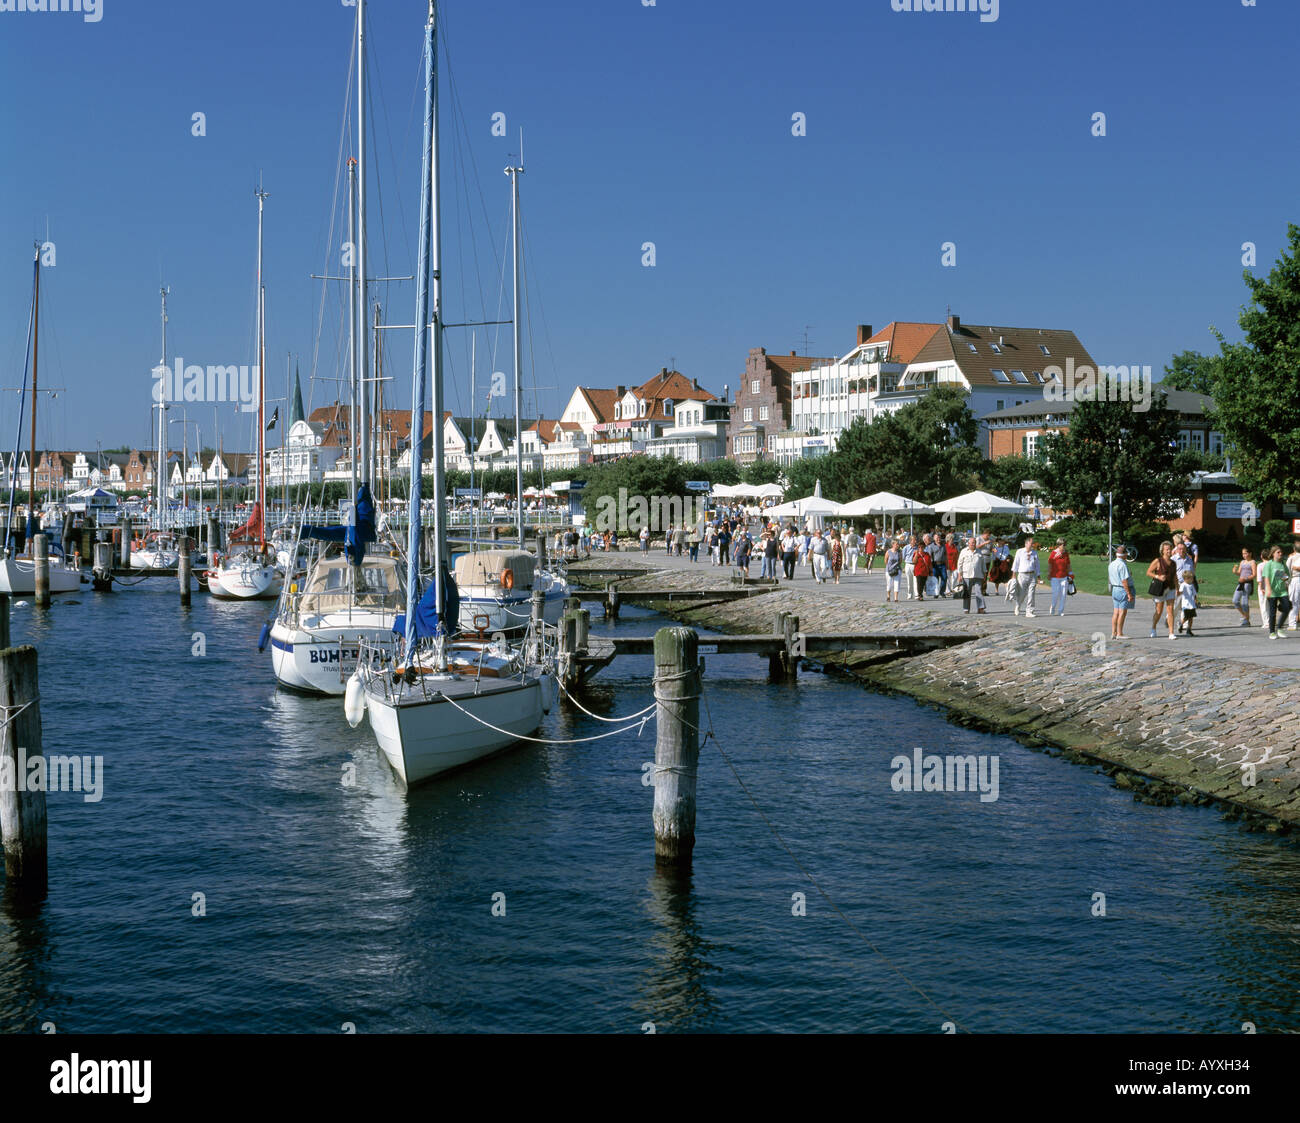 Strandpromenade mit Bootshafen, Segelboote, Luebeck-Travemuende, Luebecker Bucht, Ostsee, Schleswig-Holstein Stock Photo